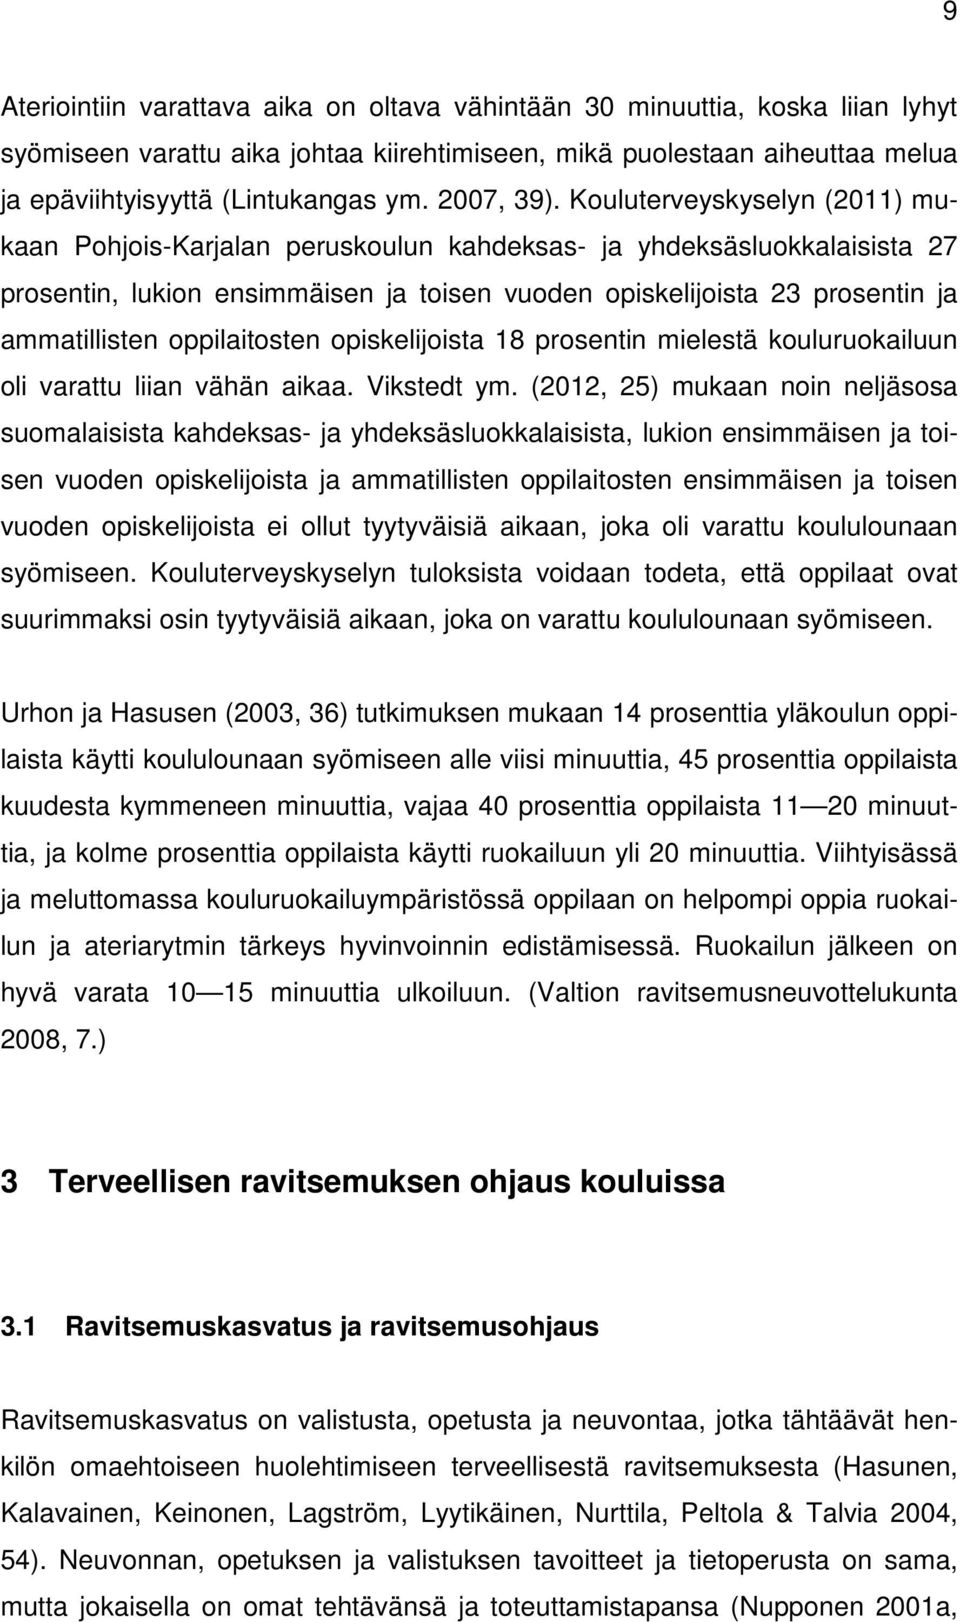 Kouluterveyskyselyn (2011) mukaan Pohjois-Karjalan peruskoulun kahdeksas- ja yhdeksäsluokkalaisista 27 prosentin, lukion ensimmäisen ja toisen vuoden opiskelijoista 23 prosentin ja ammatillisten